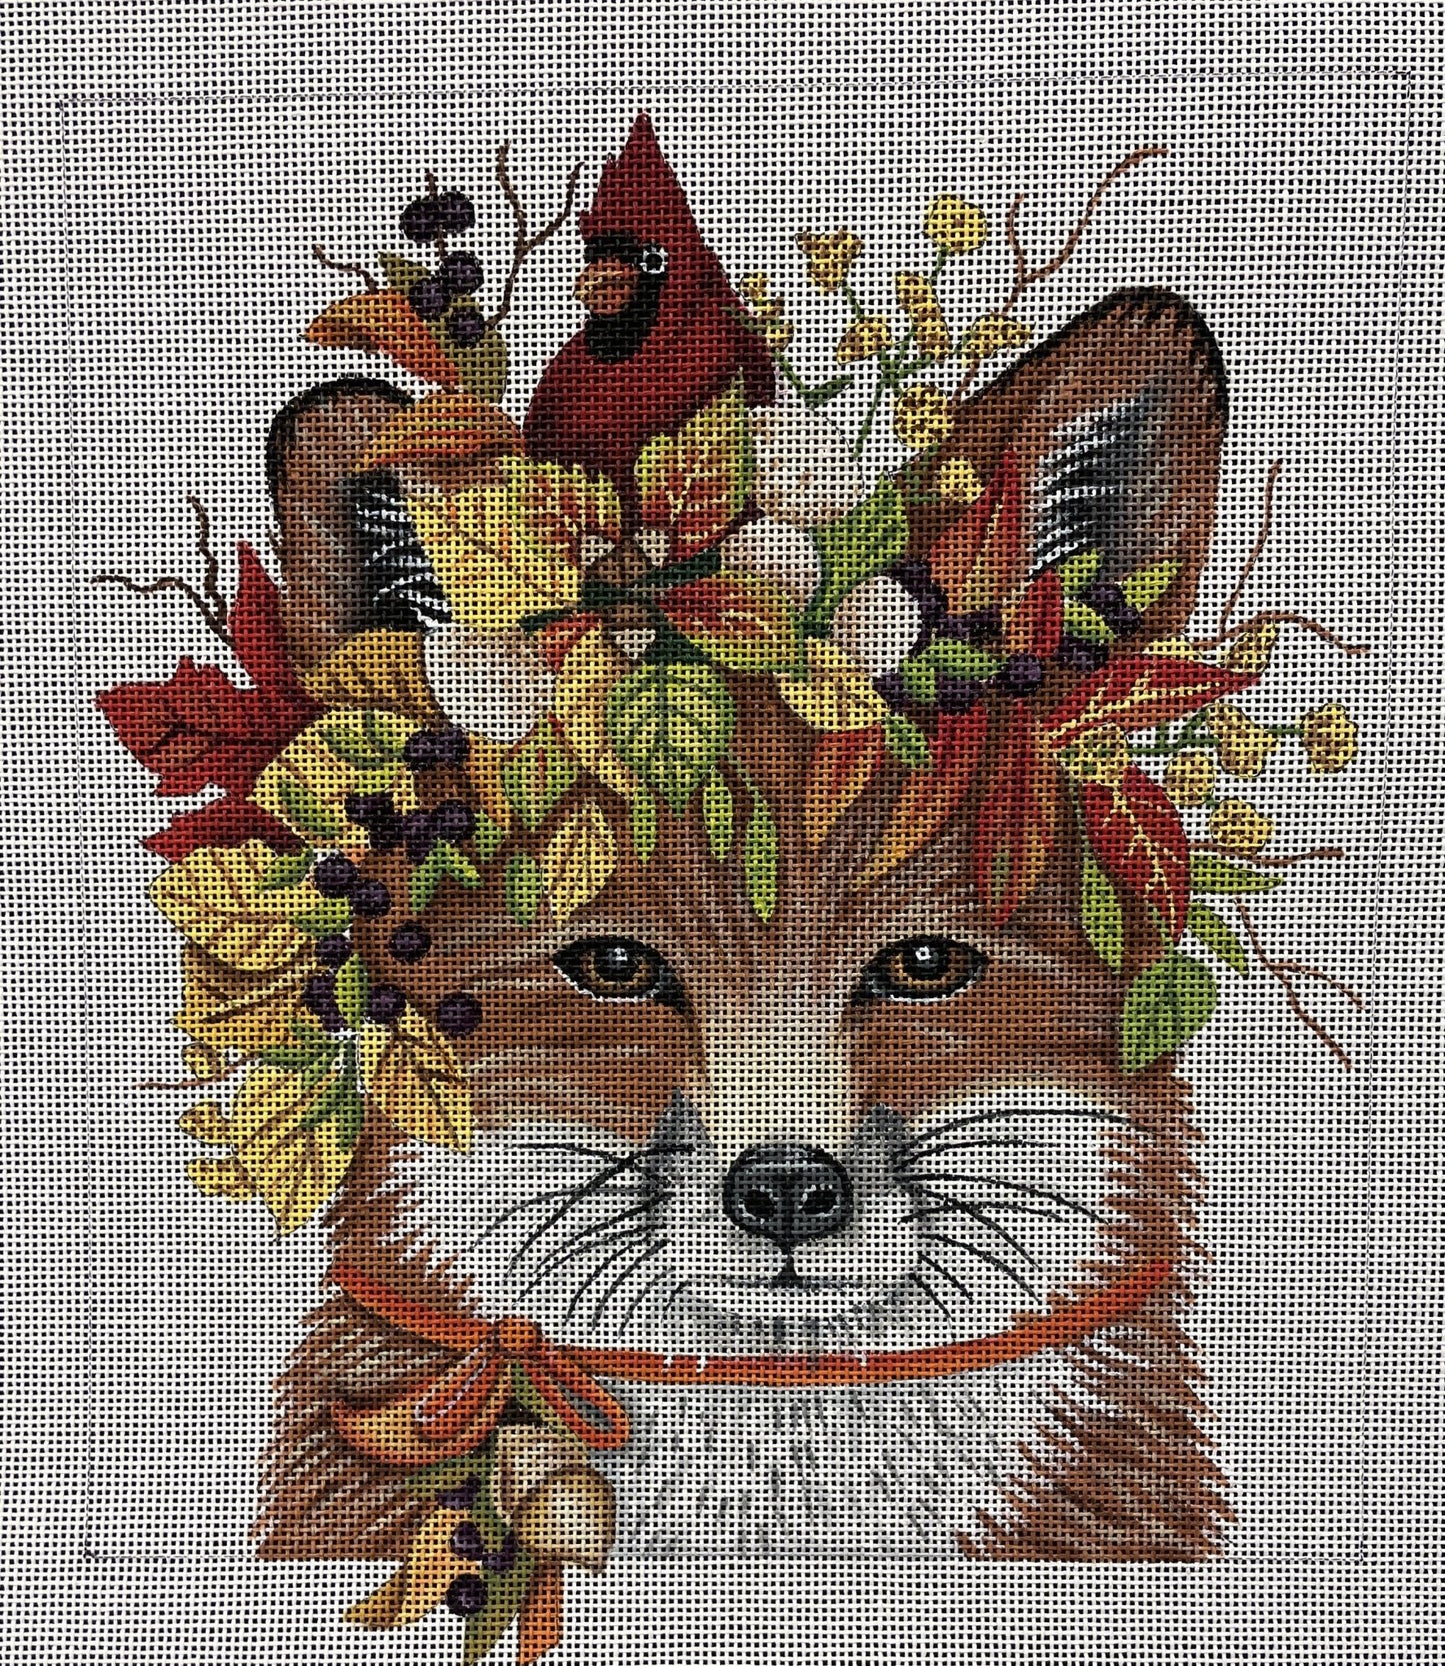 Autumn Fox - The Flying Needles